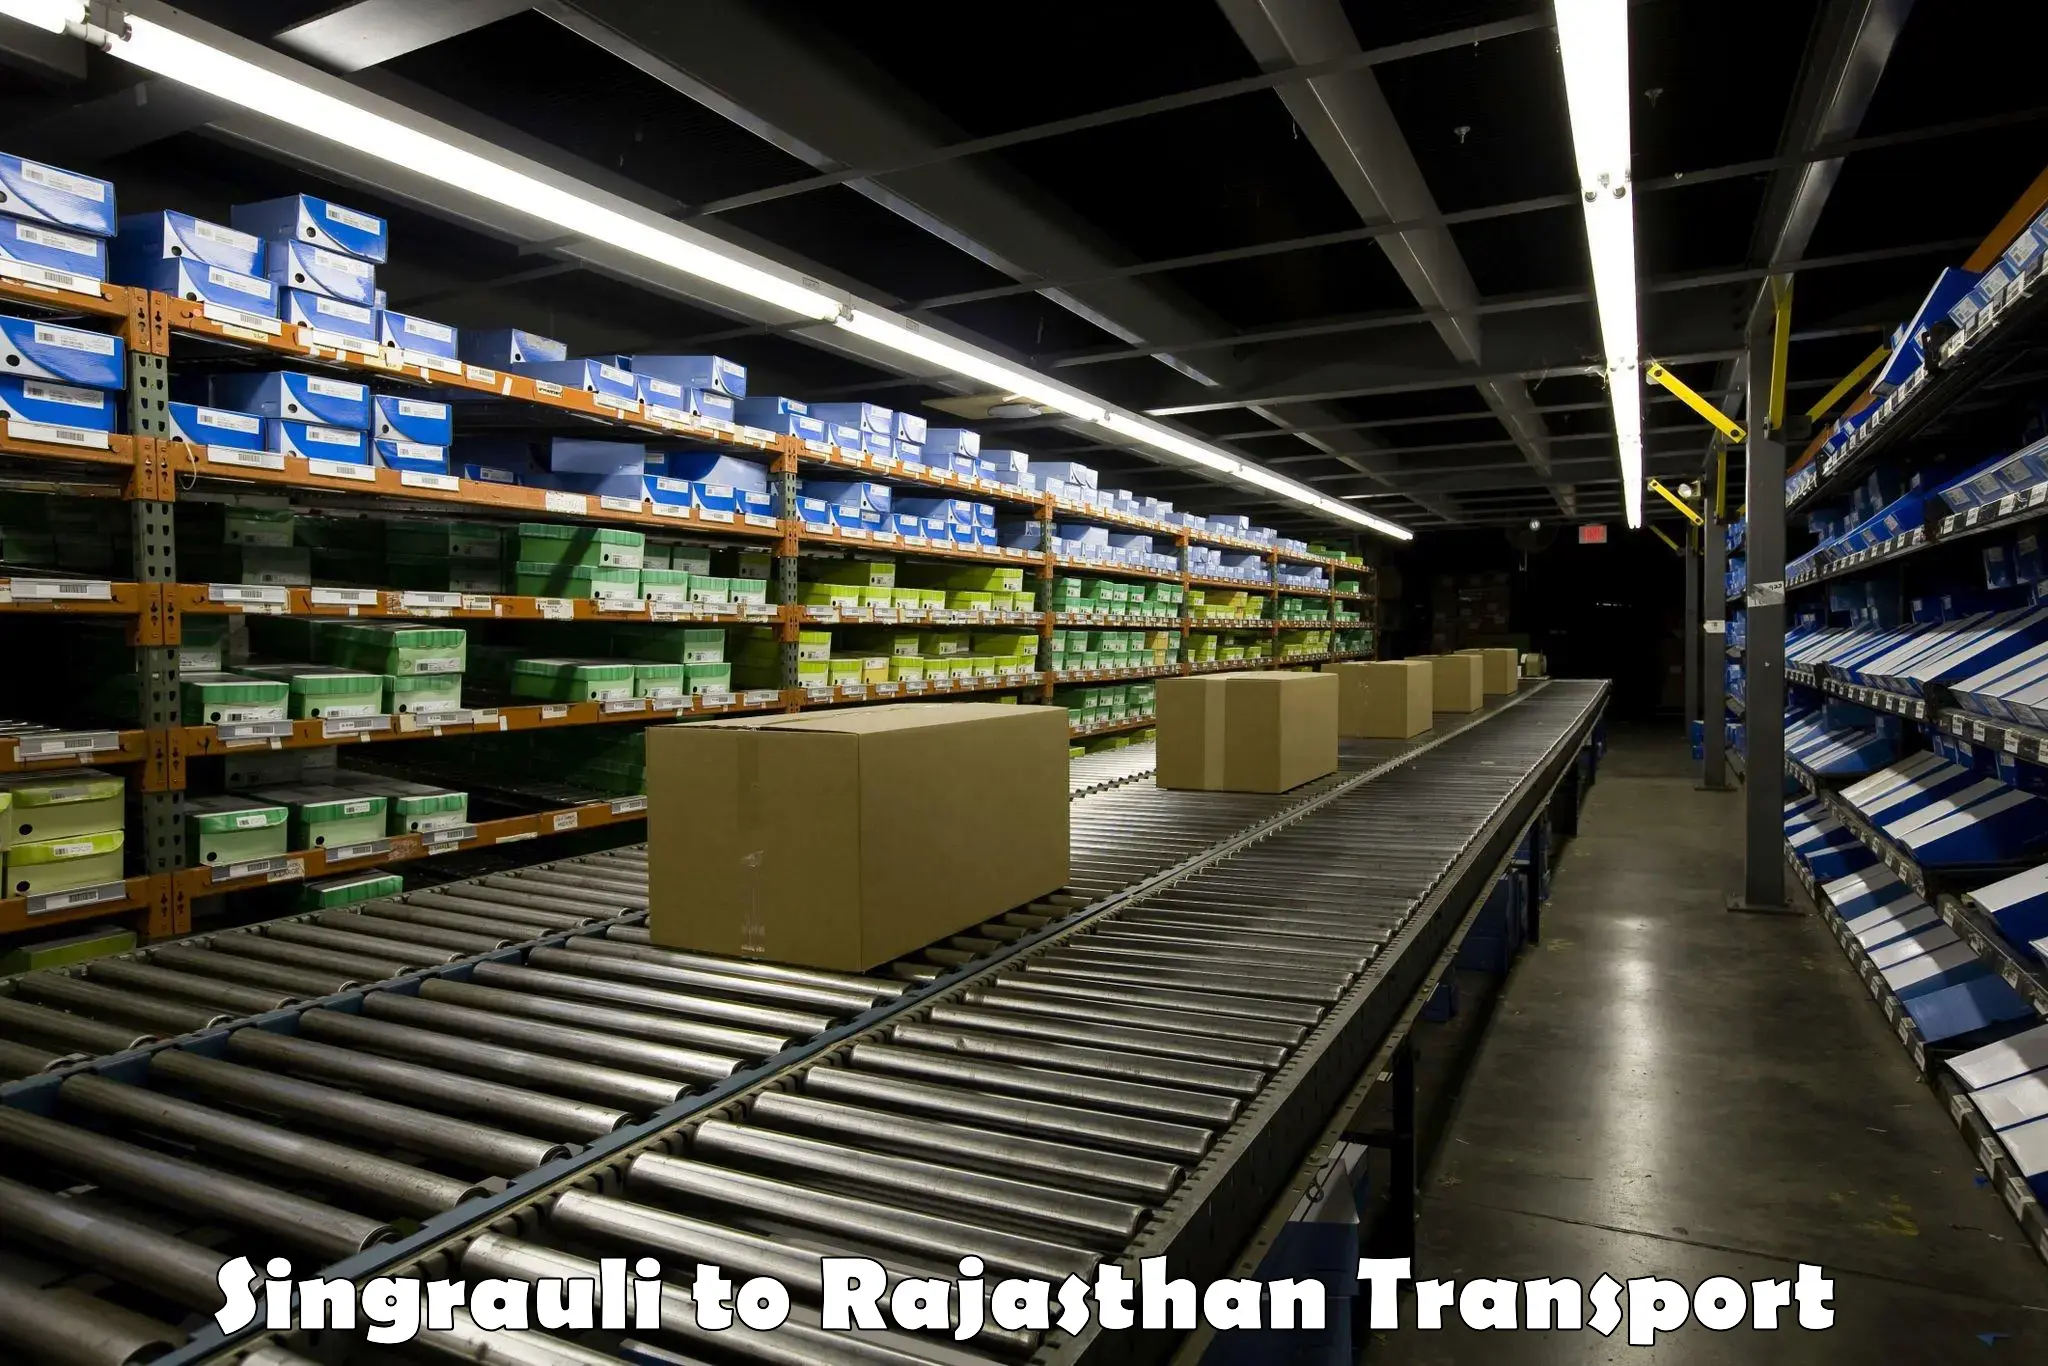 Road transport services Singrauli to Rajgarh Rajasthan